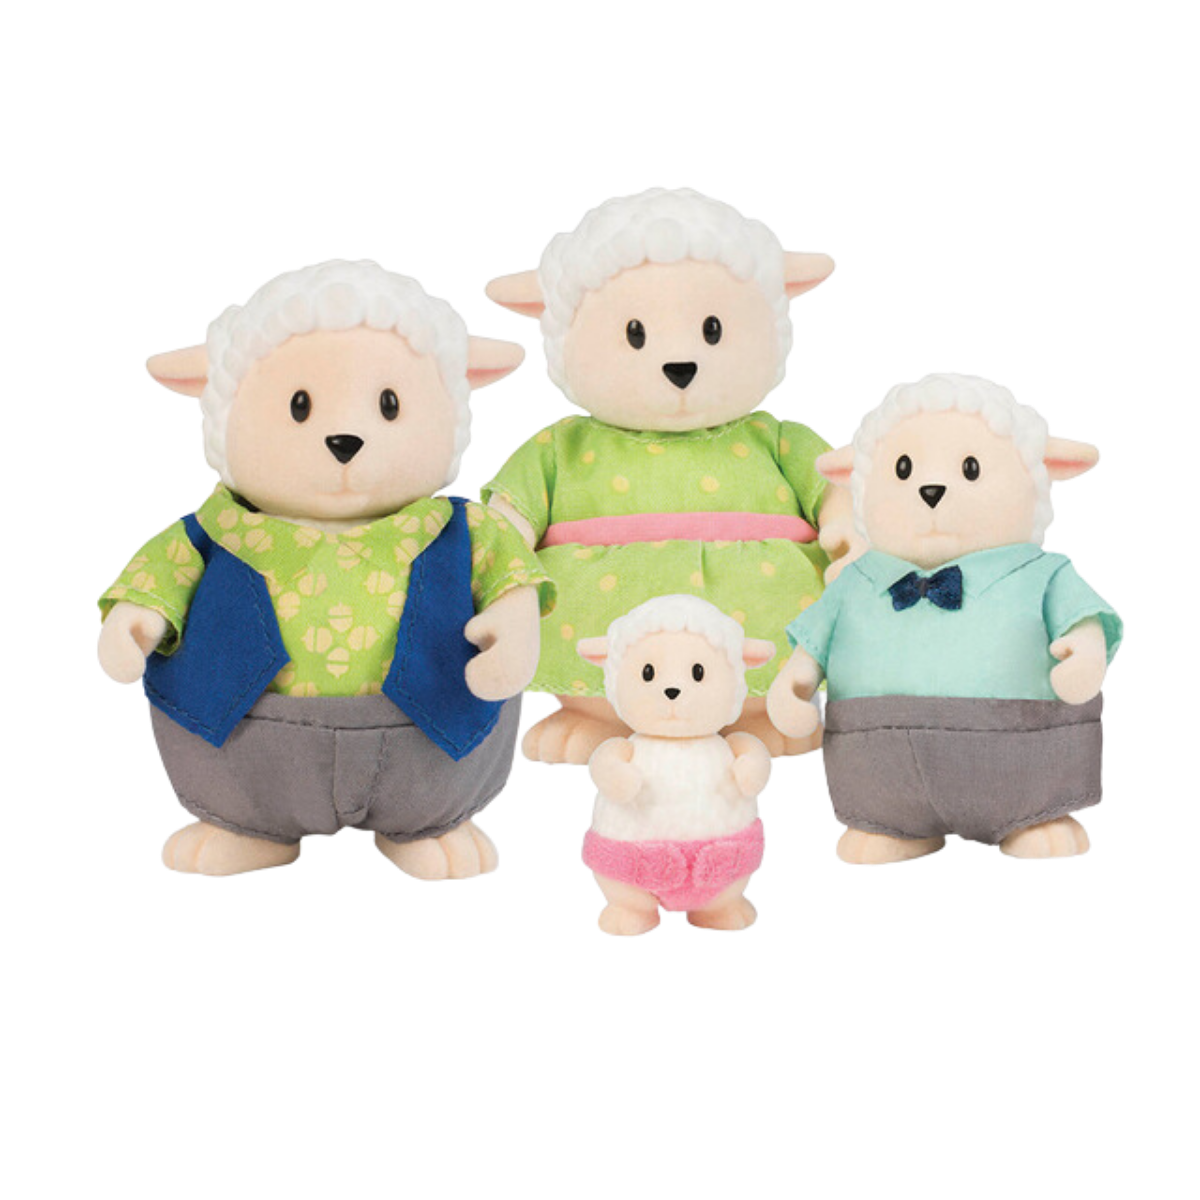 Sheep Family